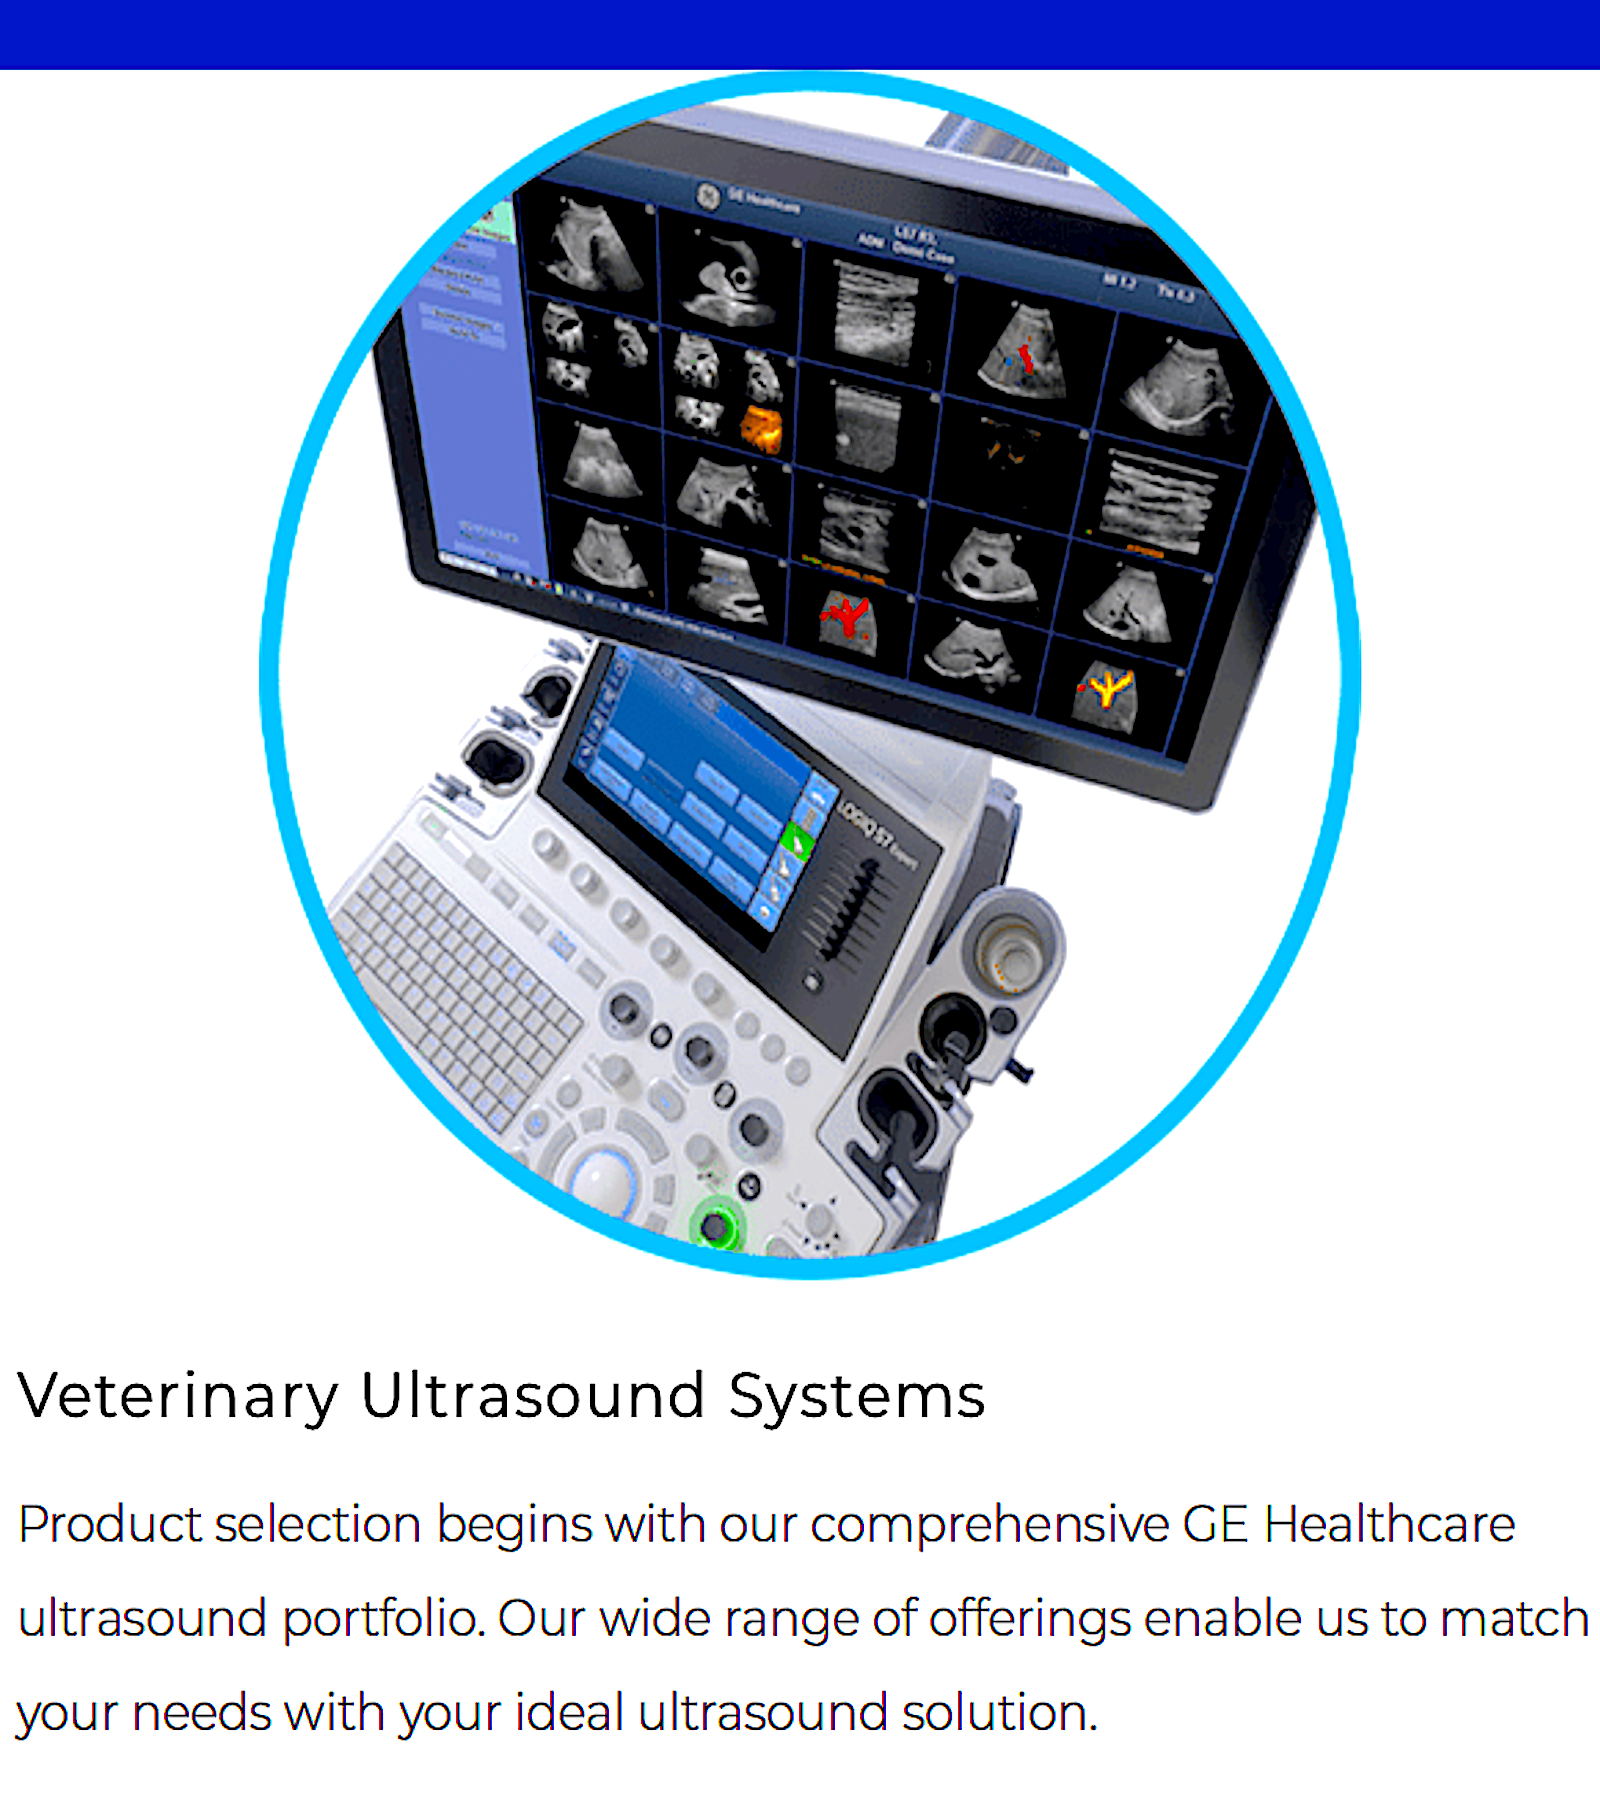 SOUND IMAGING: the global veterinary imaging leader - Vital Vet